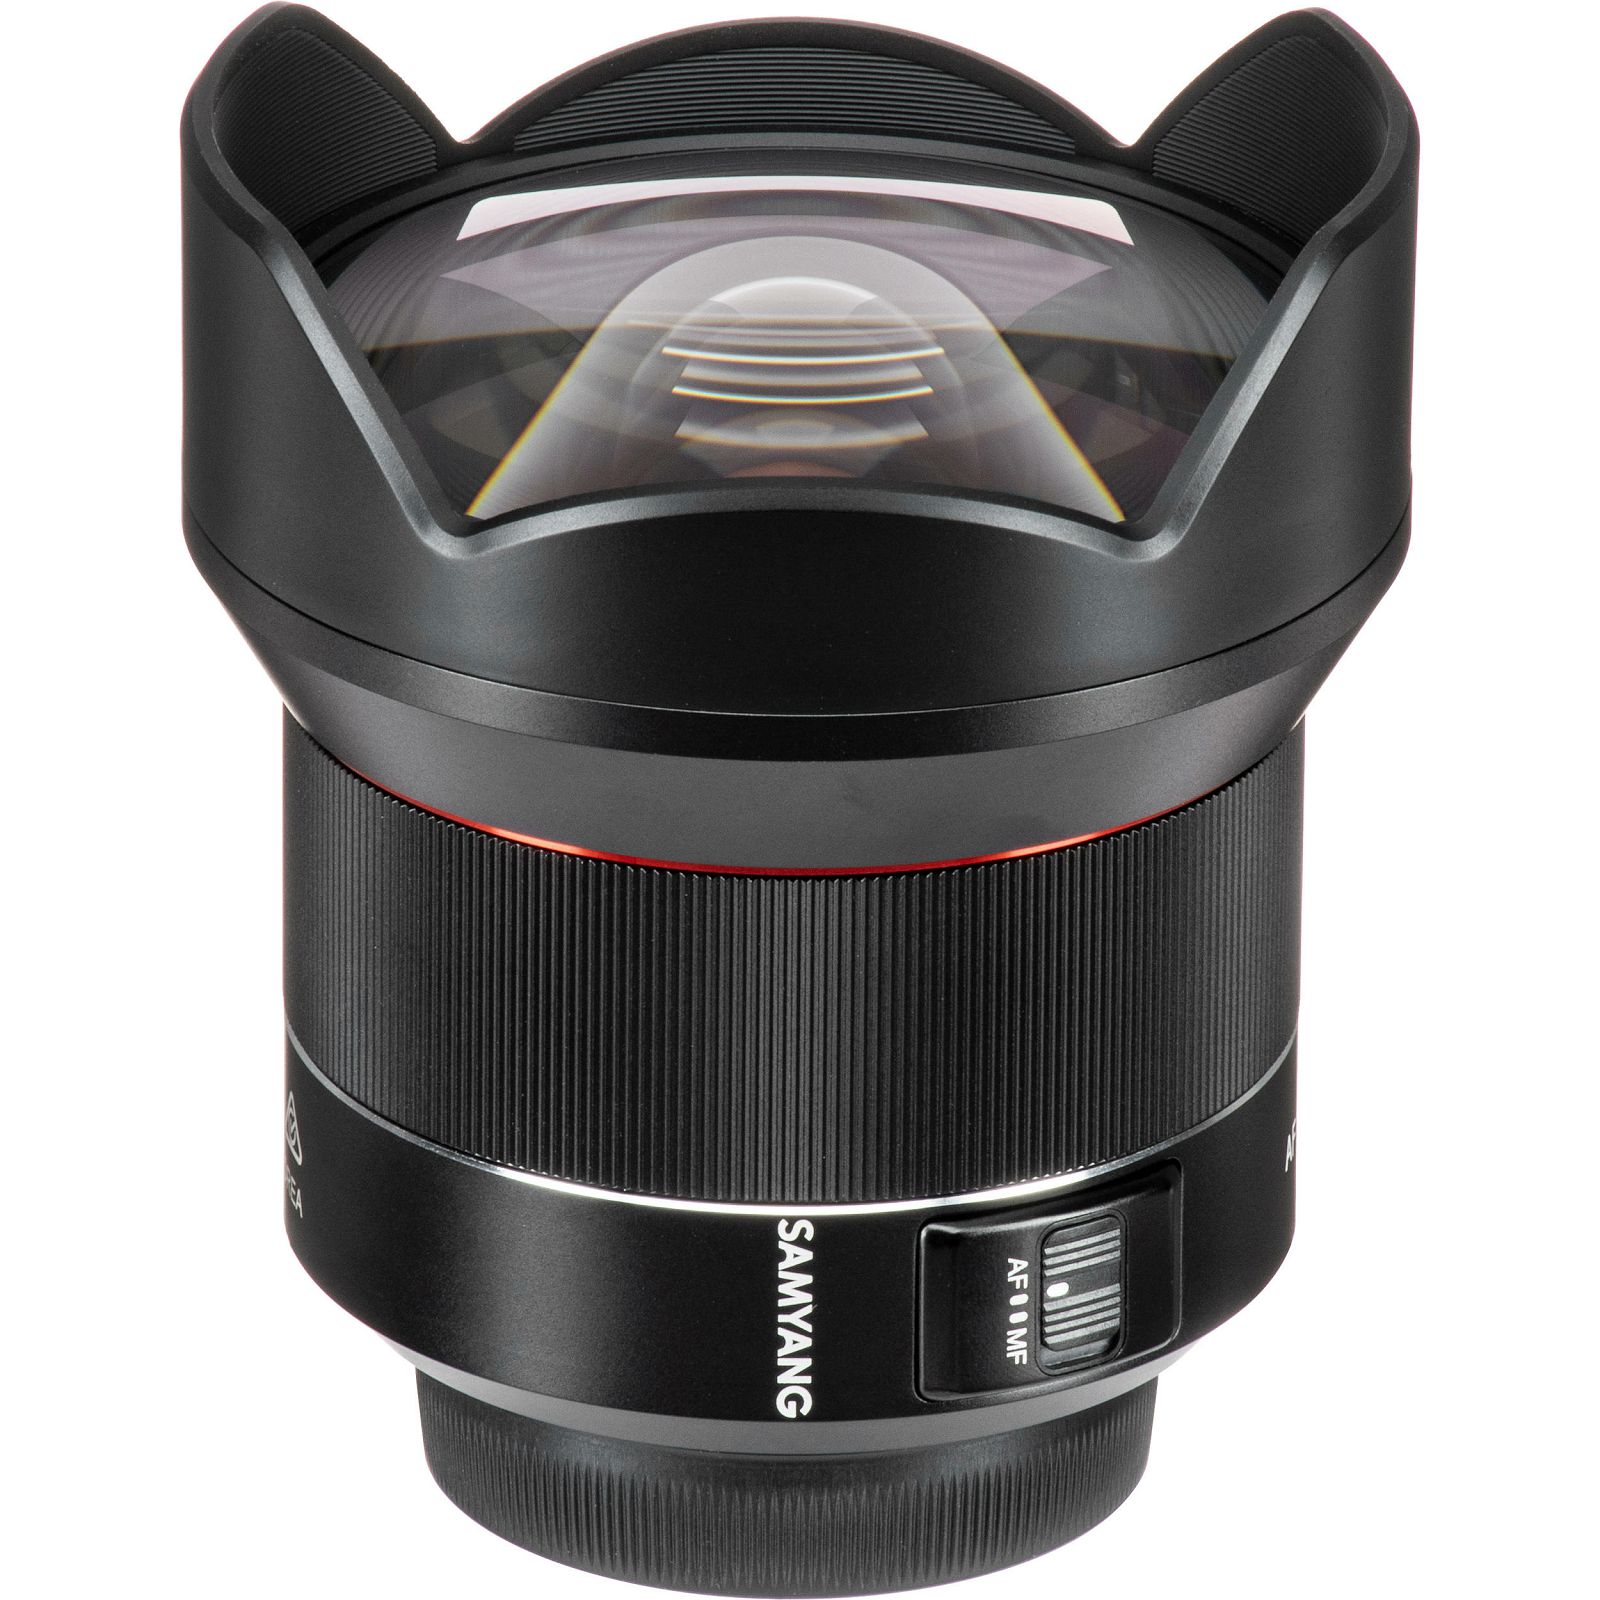 Samyang AF 14mm f/2.8 Auto Focus širokokutni objektiv za Nikon FX